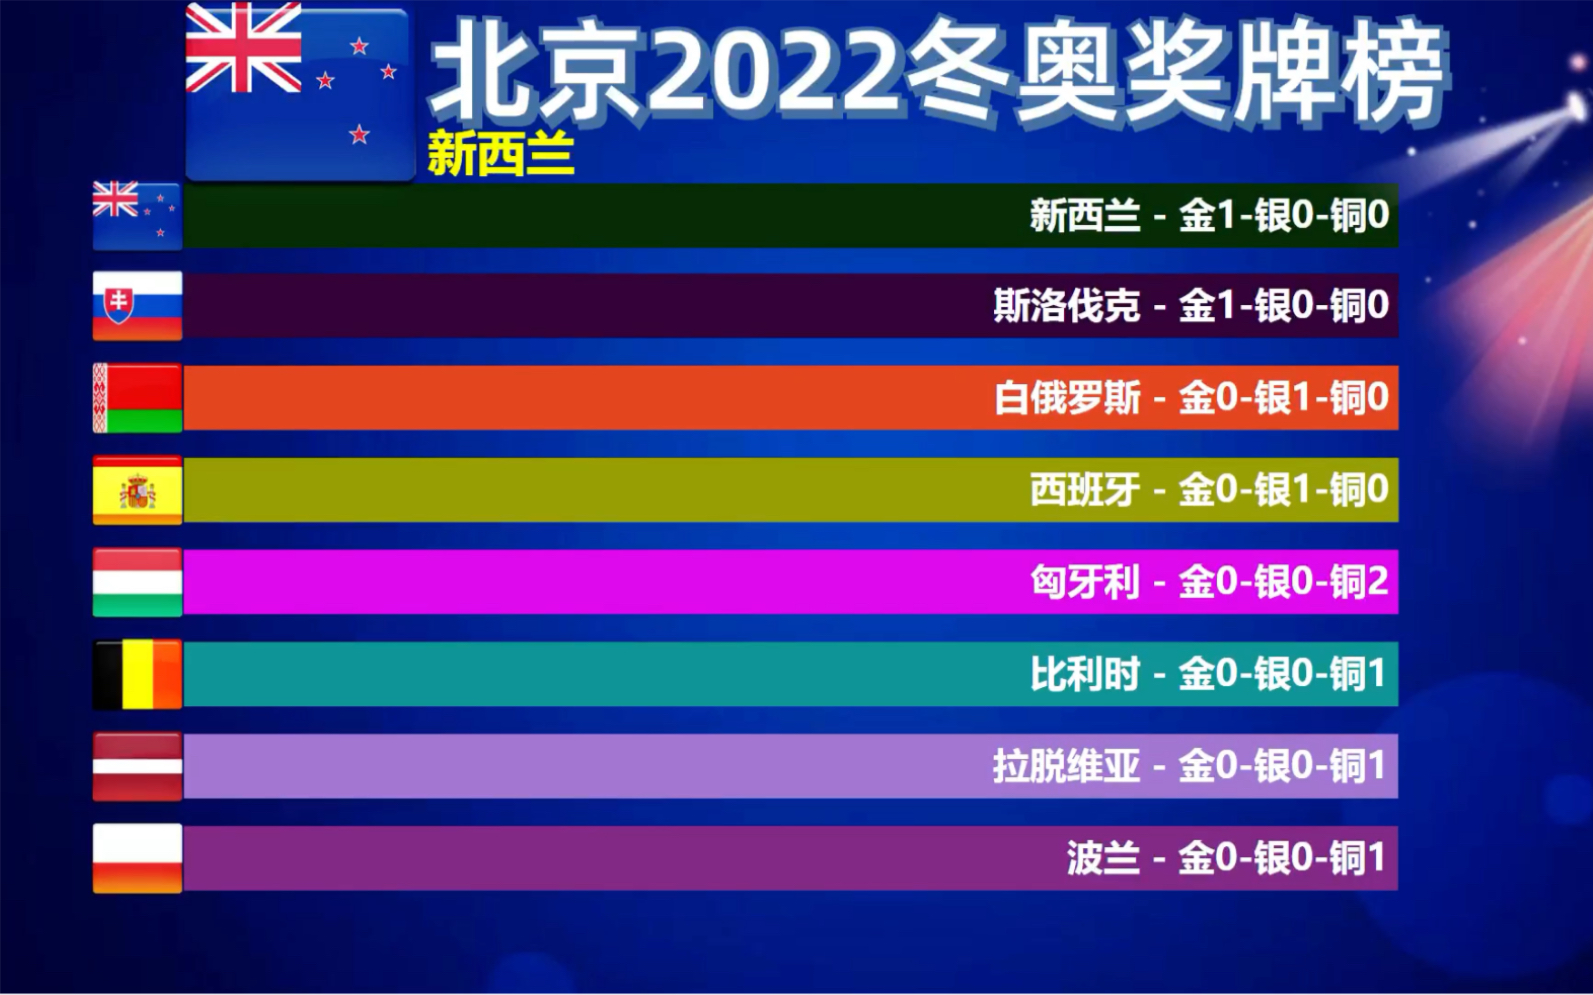 截止2022年2月12日18时北京冬奥奖牌榜,中国选手高亭宇再夺一金!加油